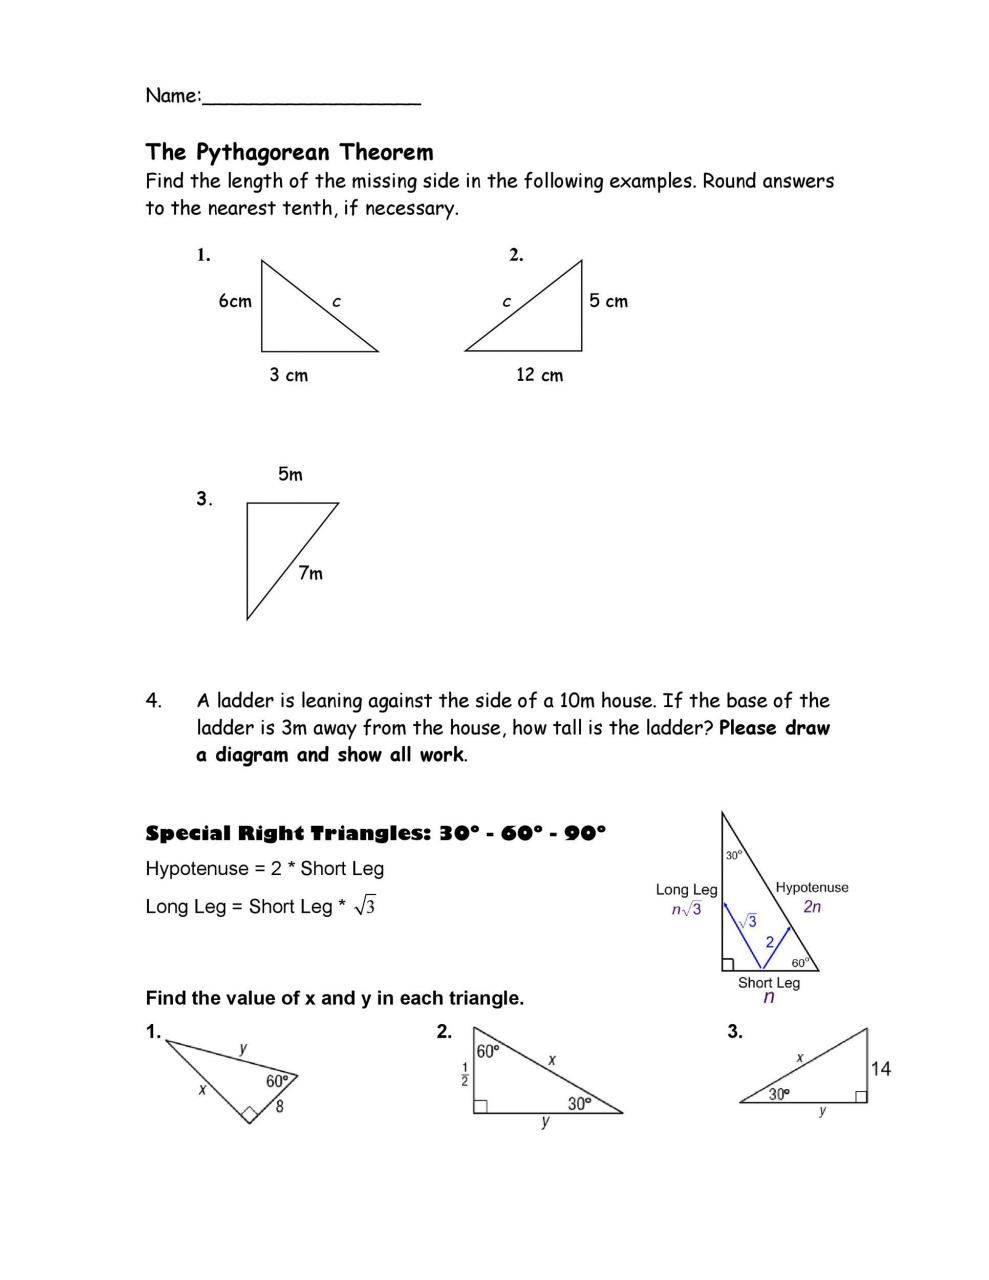 Libre teorema de Pitágoras 20